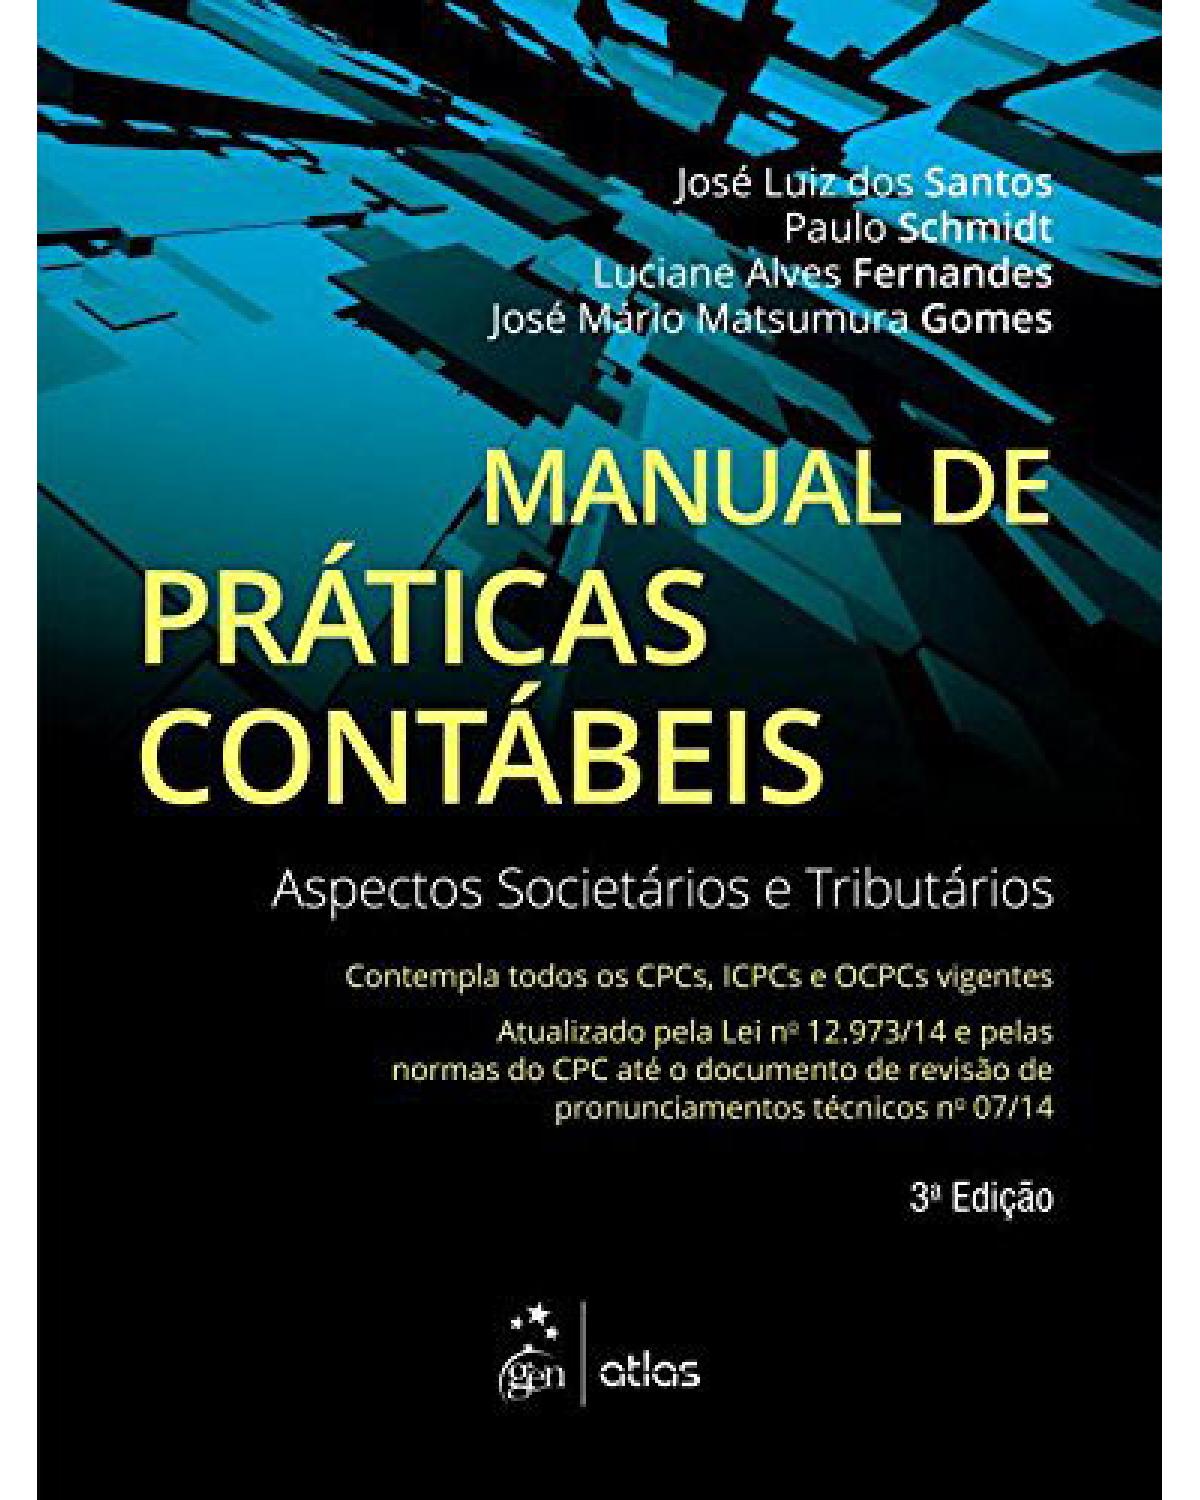 Manual de práticas contábeis: Aspectos societários e tributários - 3ª Edição